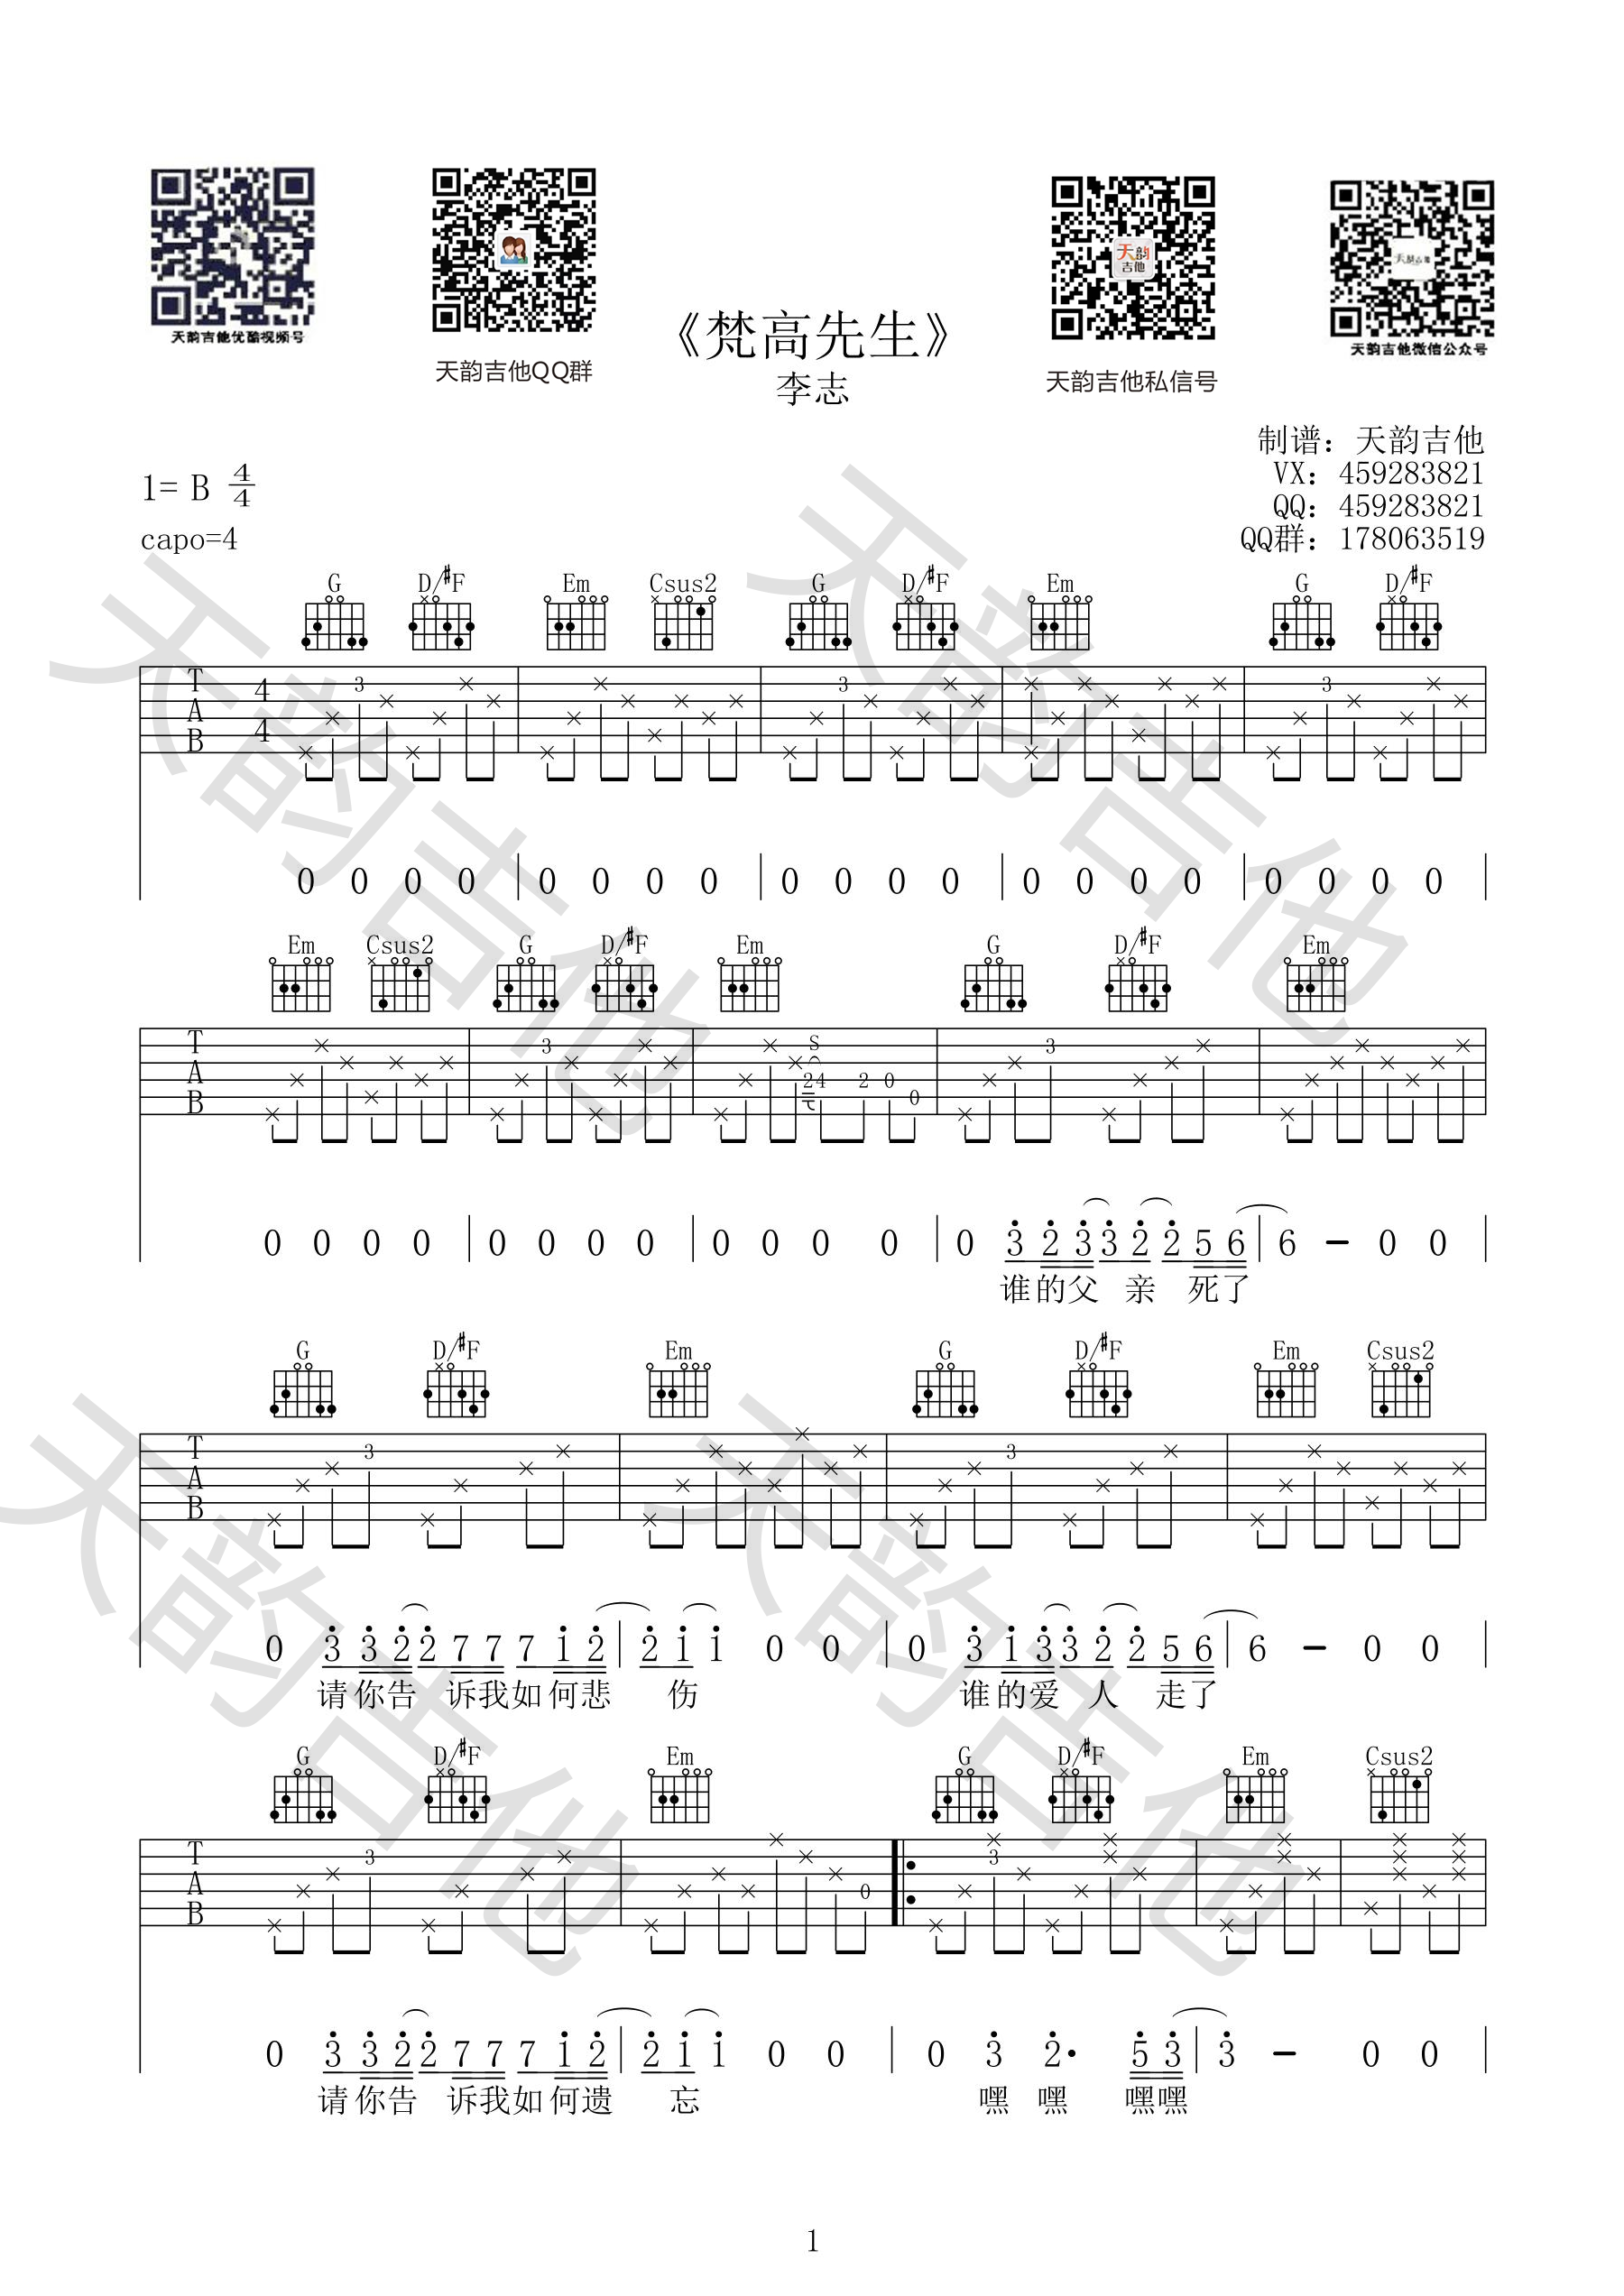 李志梵高先生吉他谱教学视频[14]爱德文吉他 - 热门吉他谱教学视频 - 吉他之家